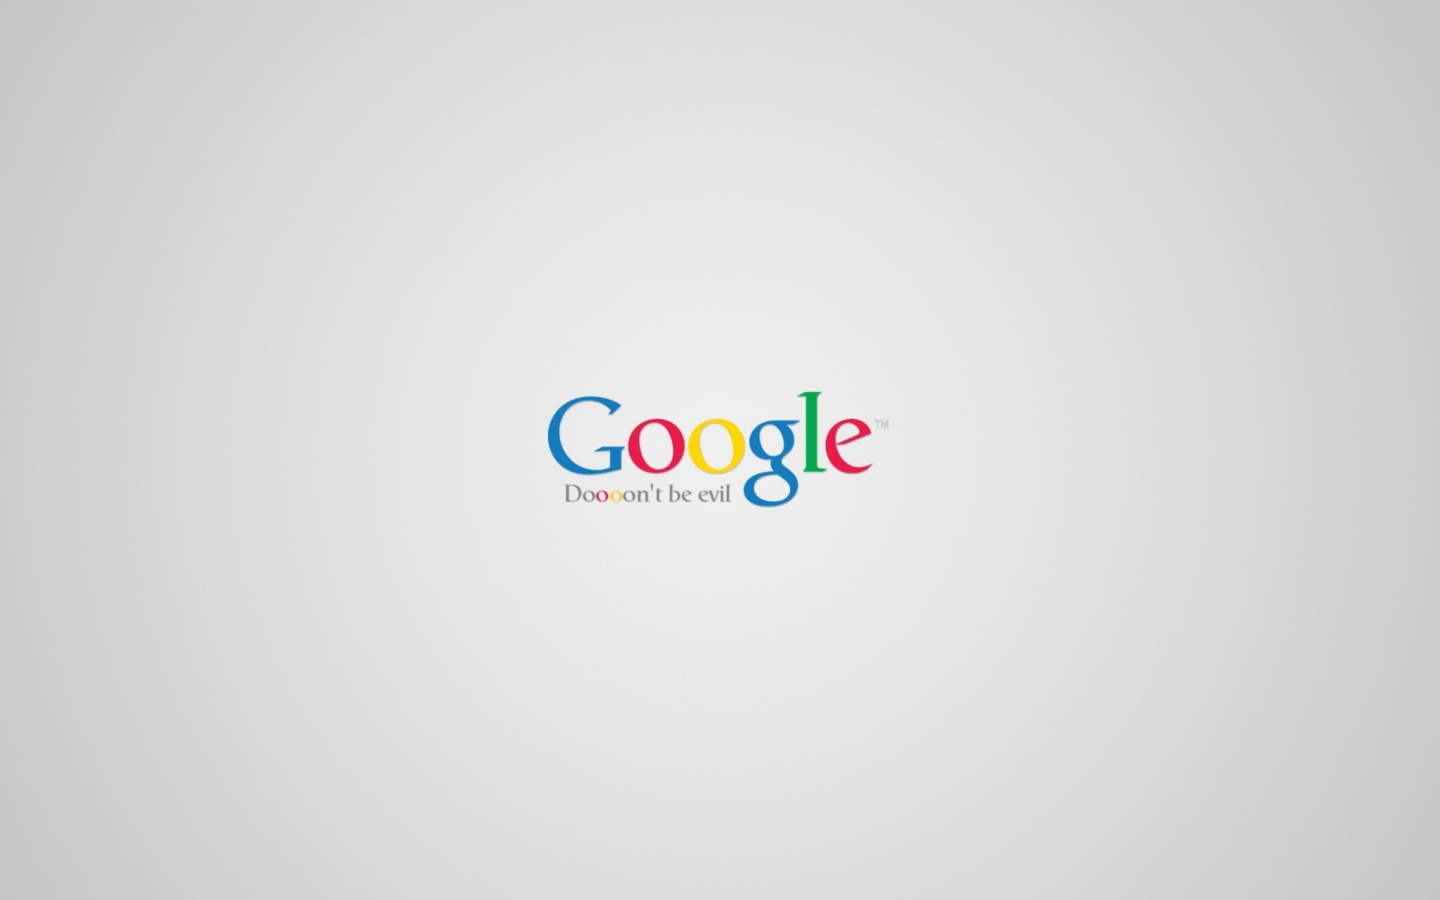 Sfondi Google - Don't be evil 1440x900